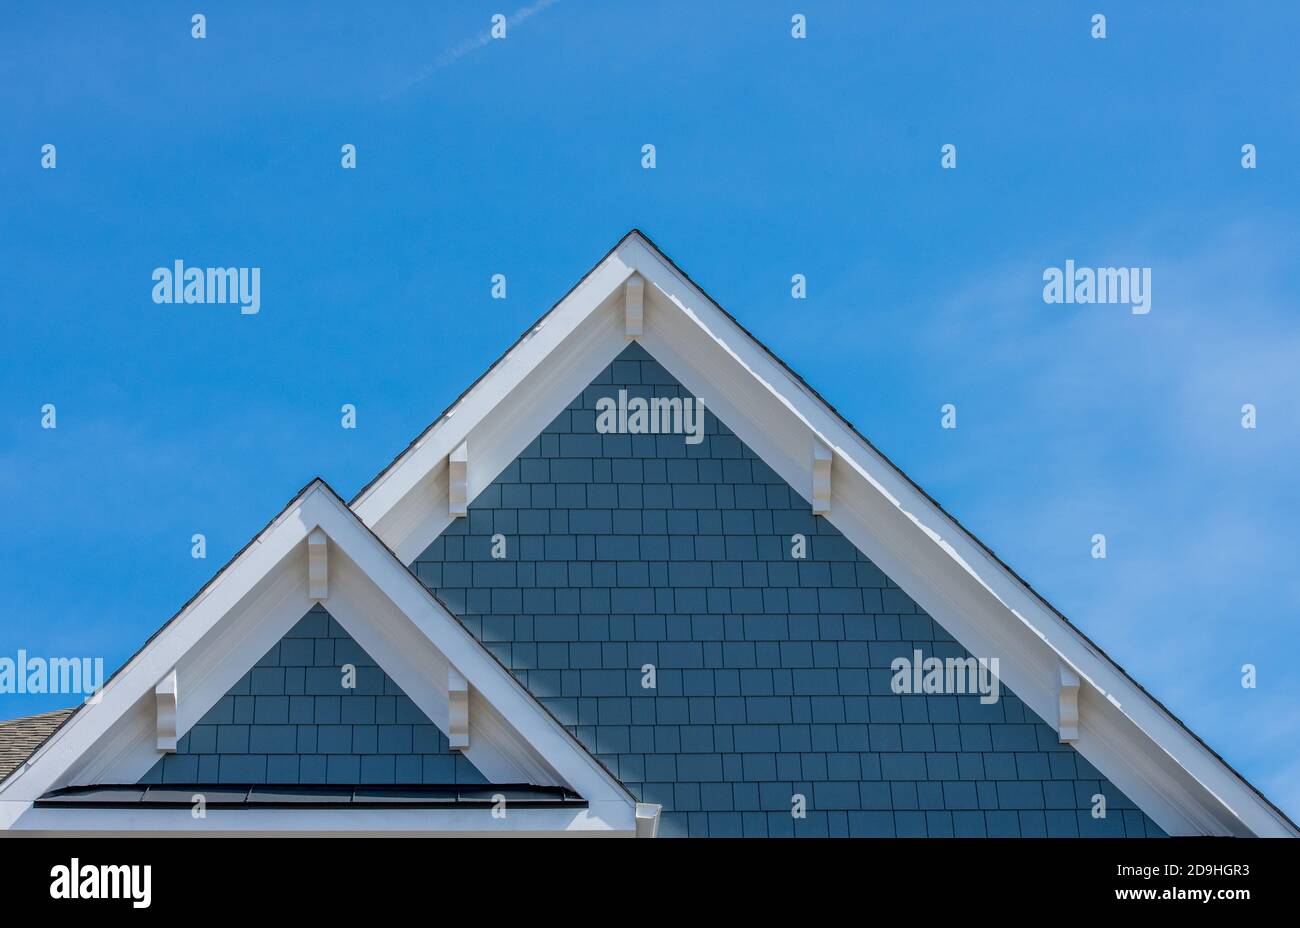 Weißer Dachboden-Fensterlüfter auf blauem Dachboden, Giebel, Korbel, louvre auf einem Neubau Luxus amerikanischen Einfamilienhaus in der Ostküste USA mit blau Stockfoto